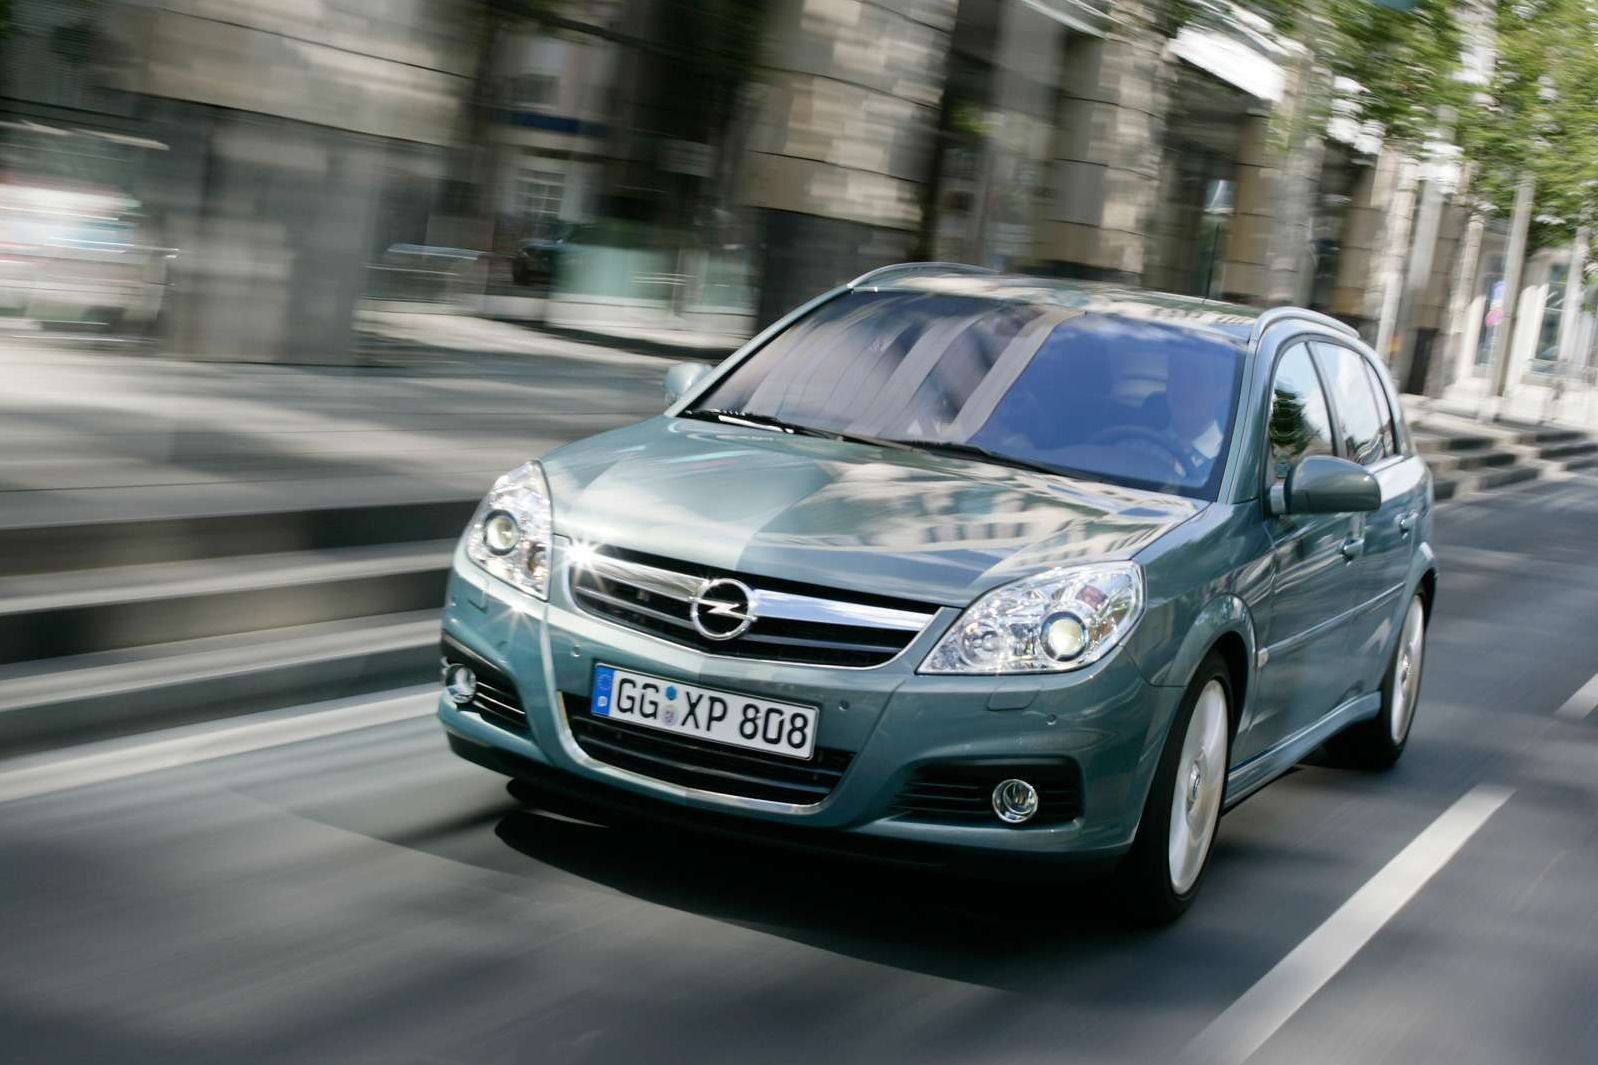 Претензии на бизнес в кузове хэтчбек: стоит ли покупать Opel Signum за 500 тысяч рублей